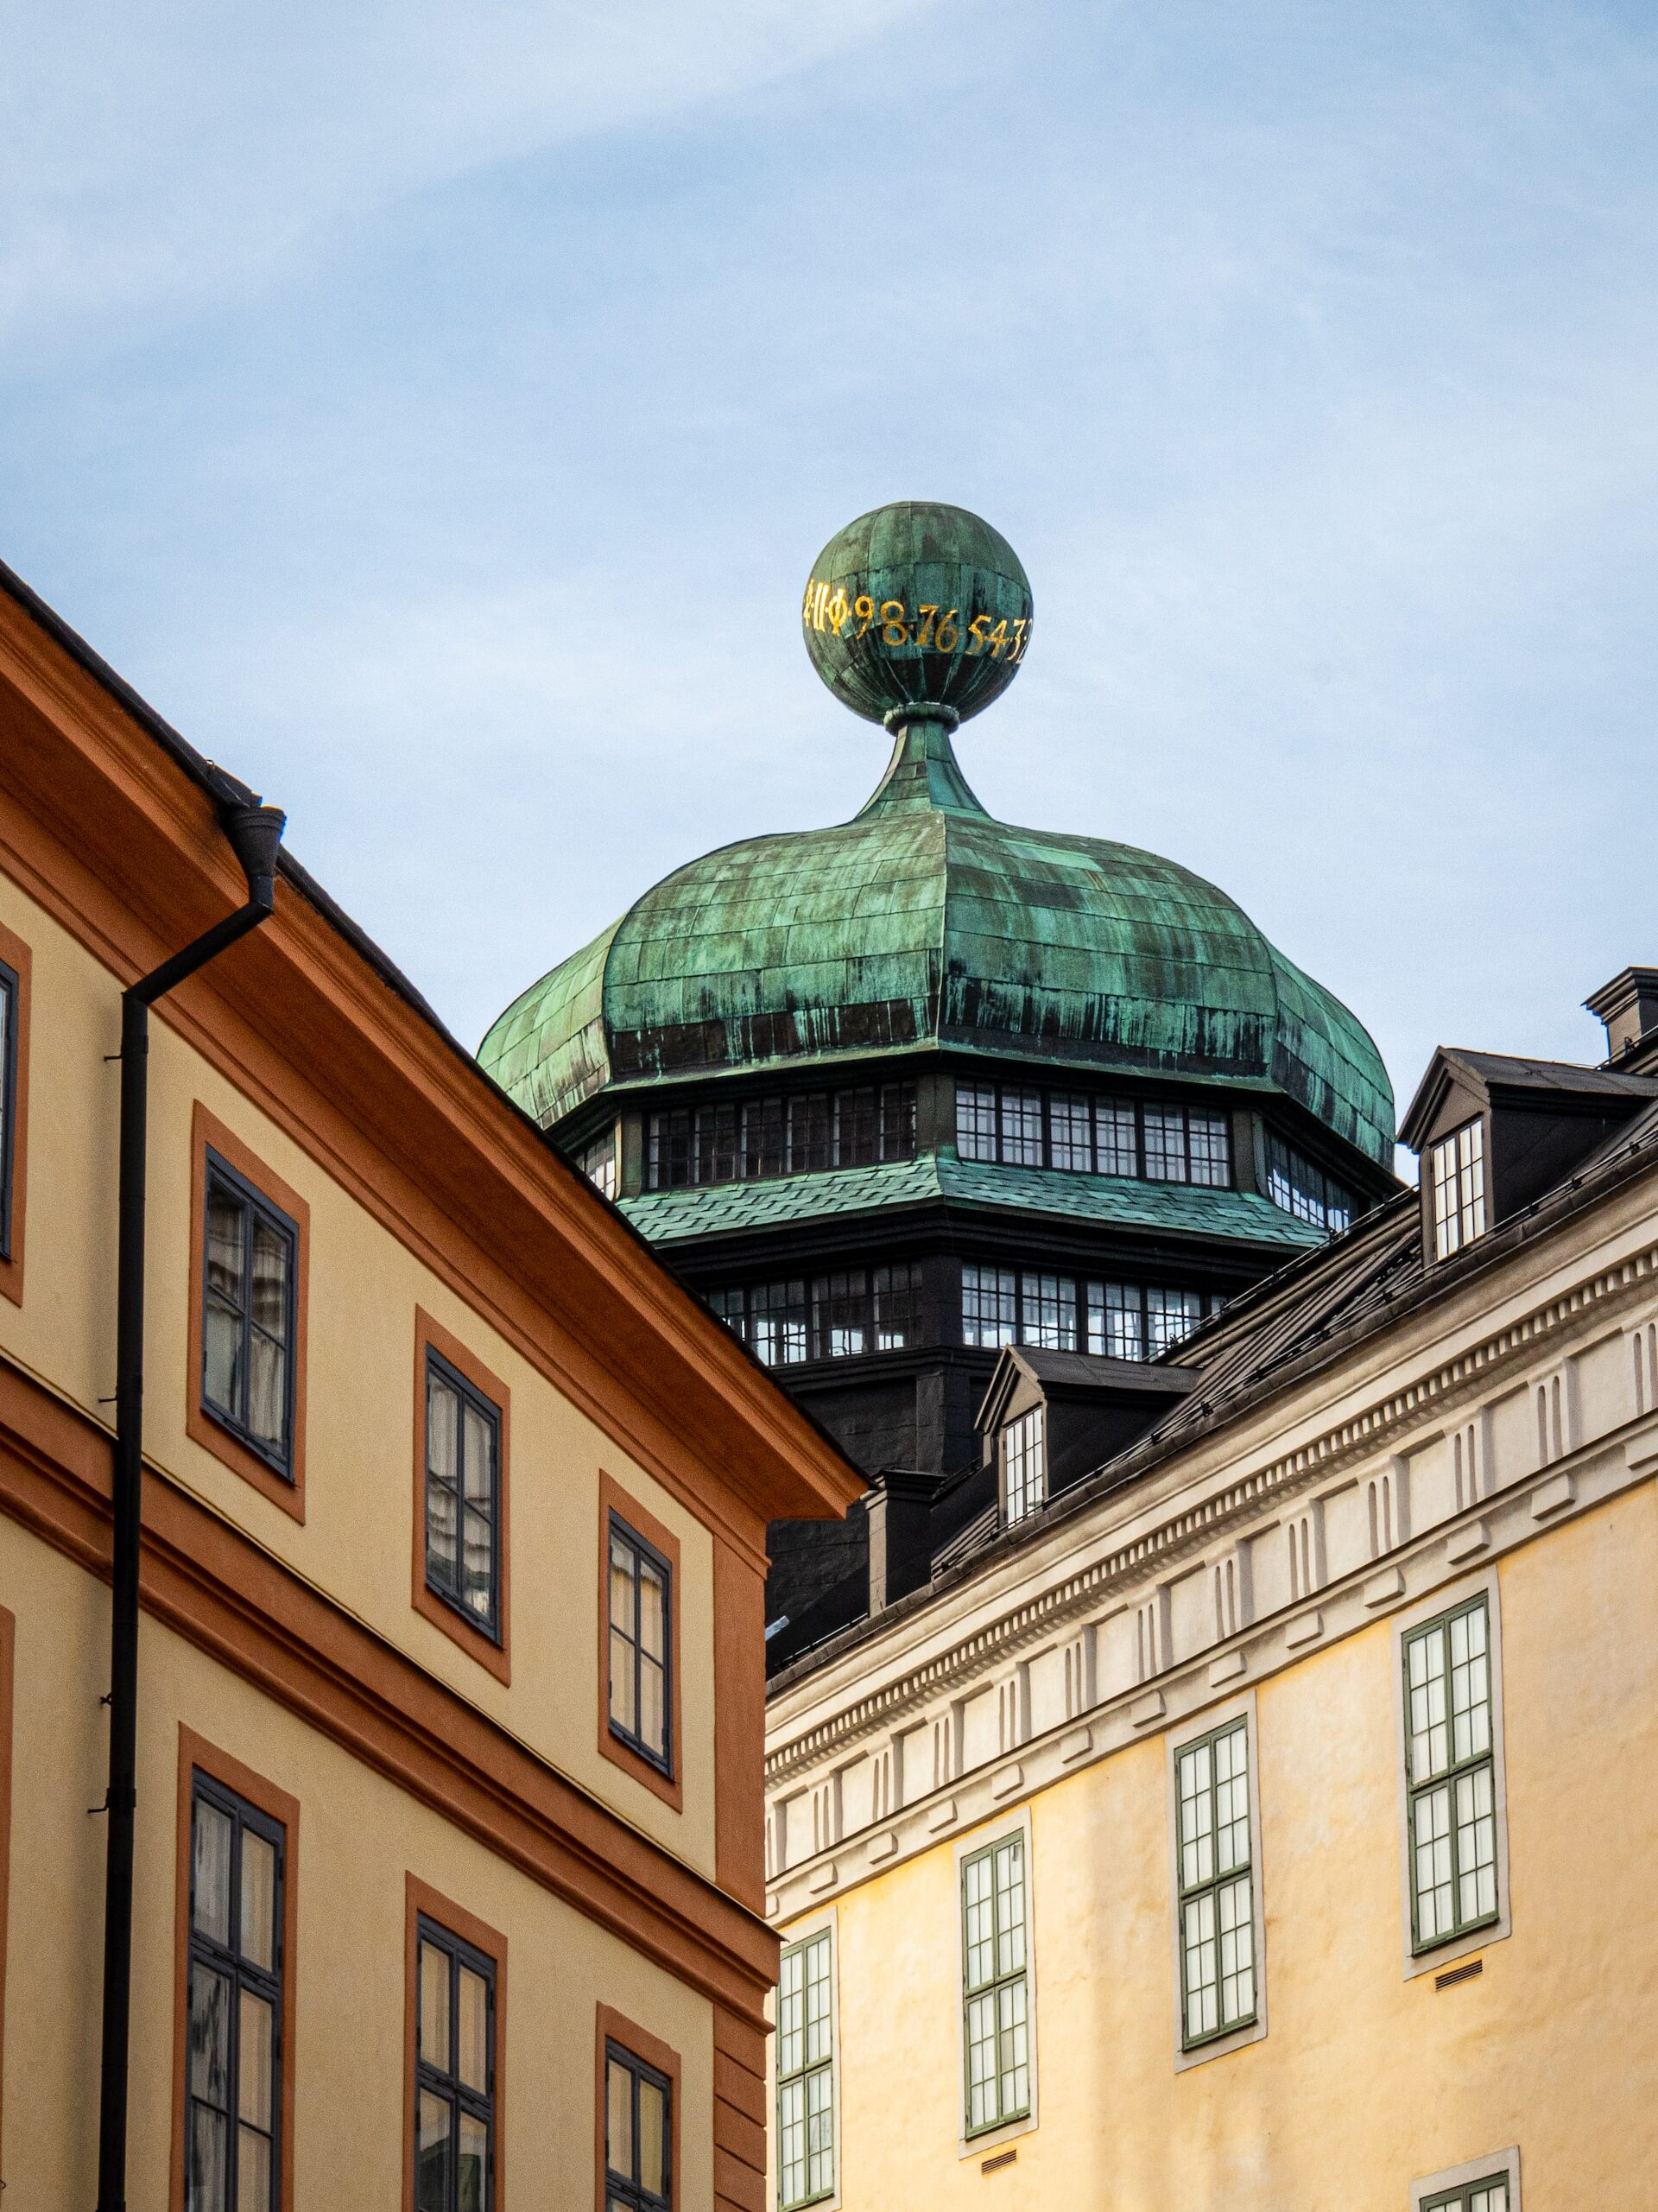 The Place är ett rekryteringsföretag i Uppsala med över 30 års erfarenhet.